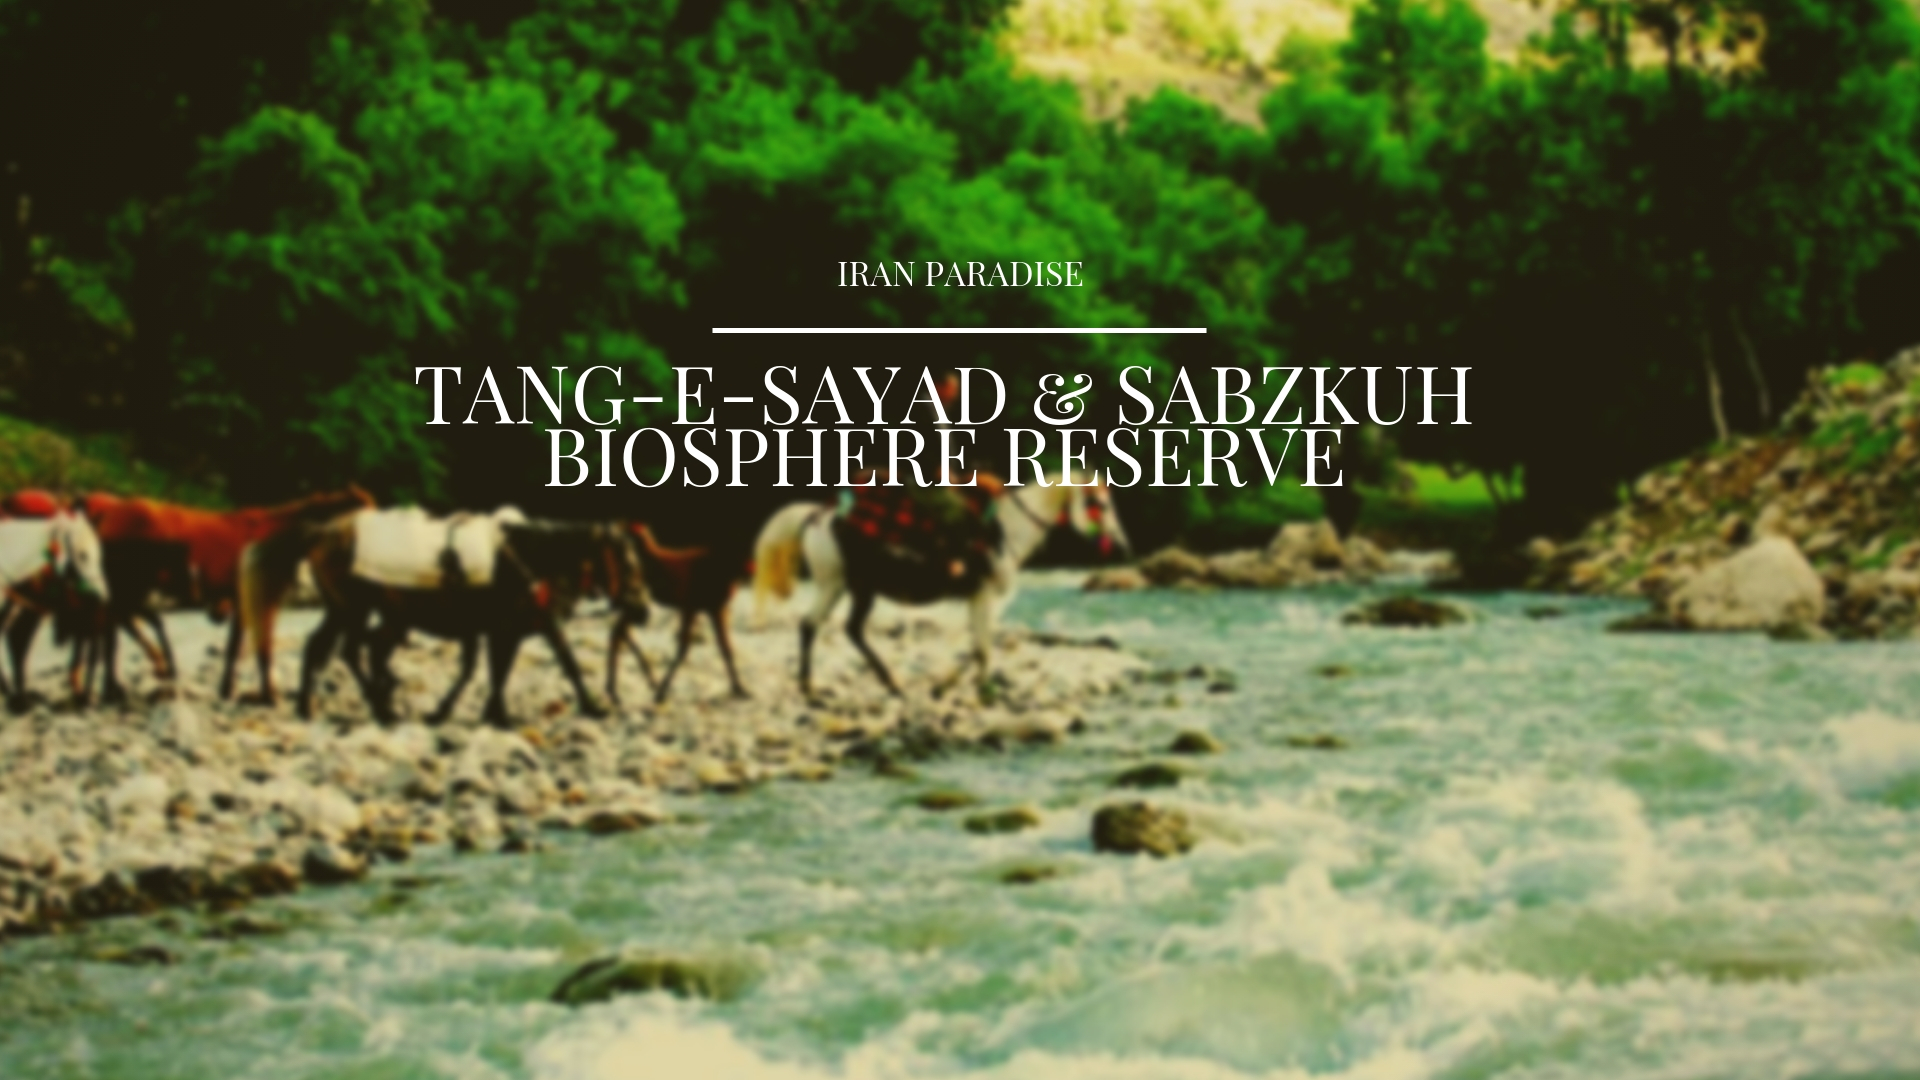 Tang-E-Sayad & Sabzkuh Biosphere Reserve